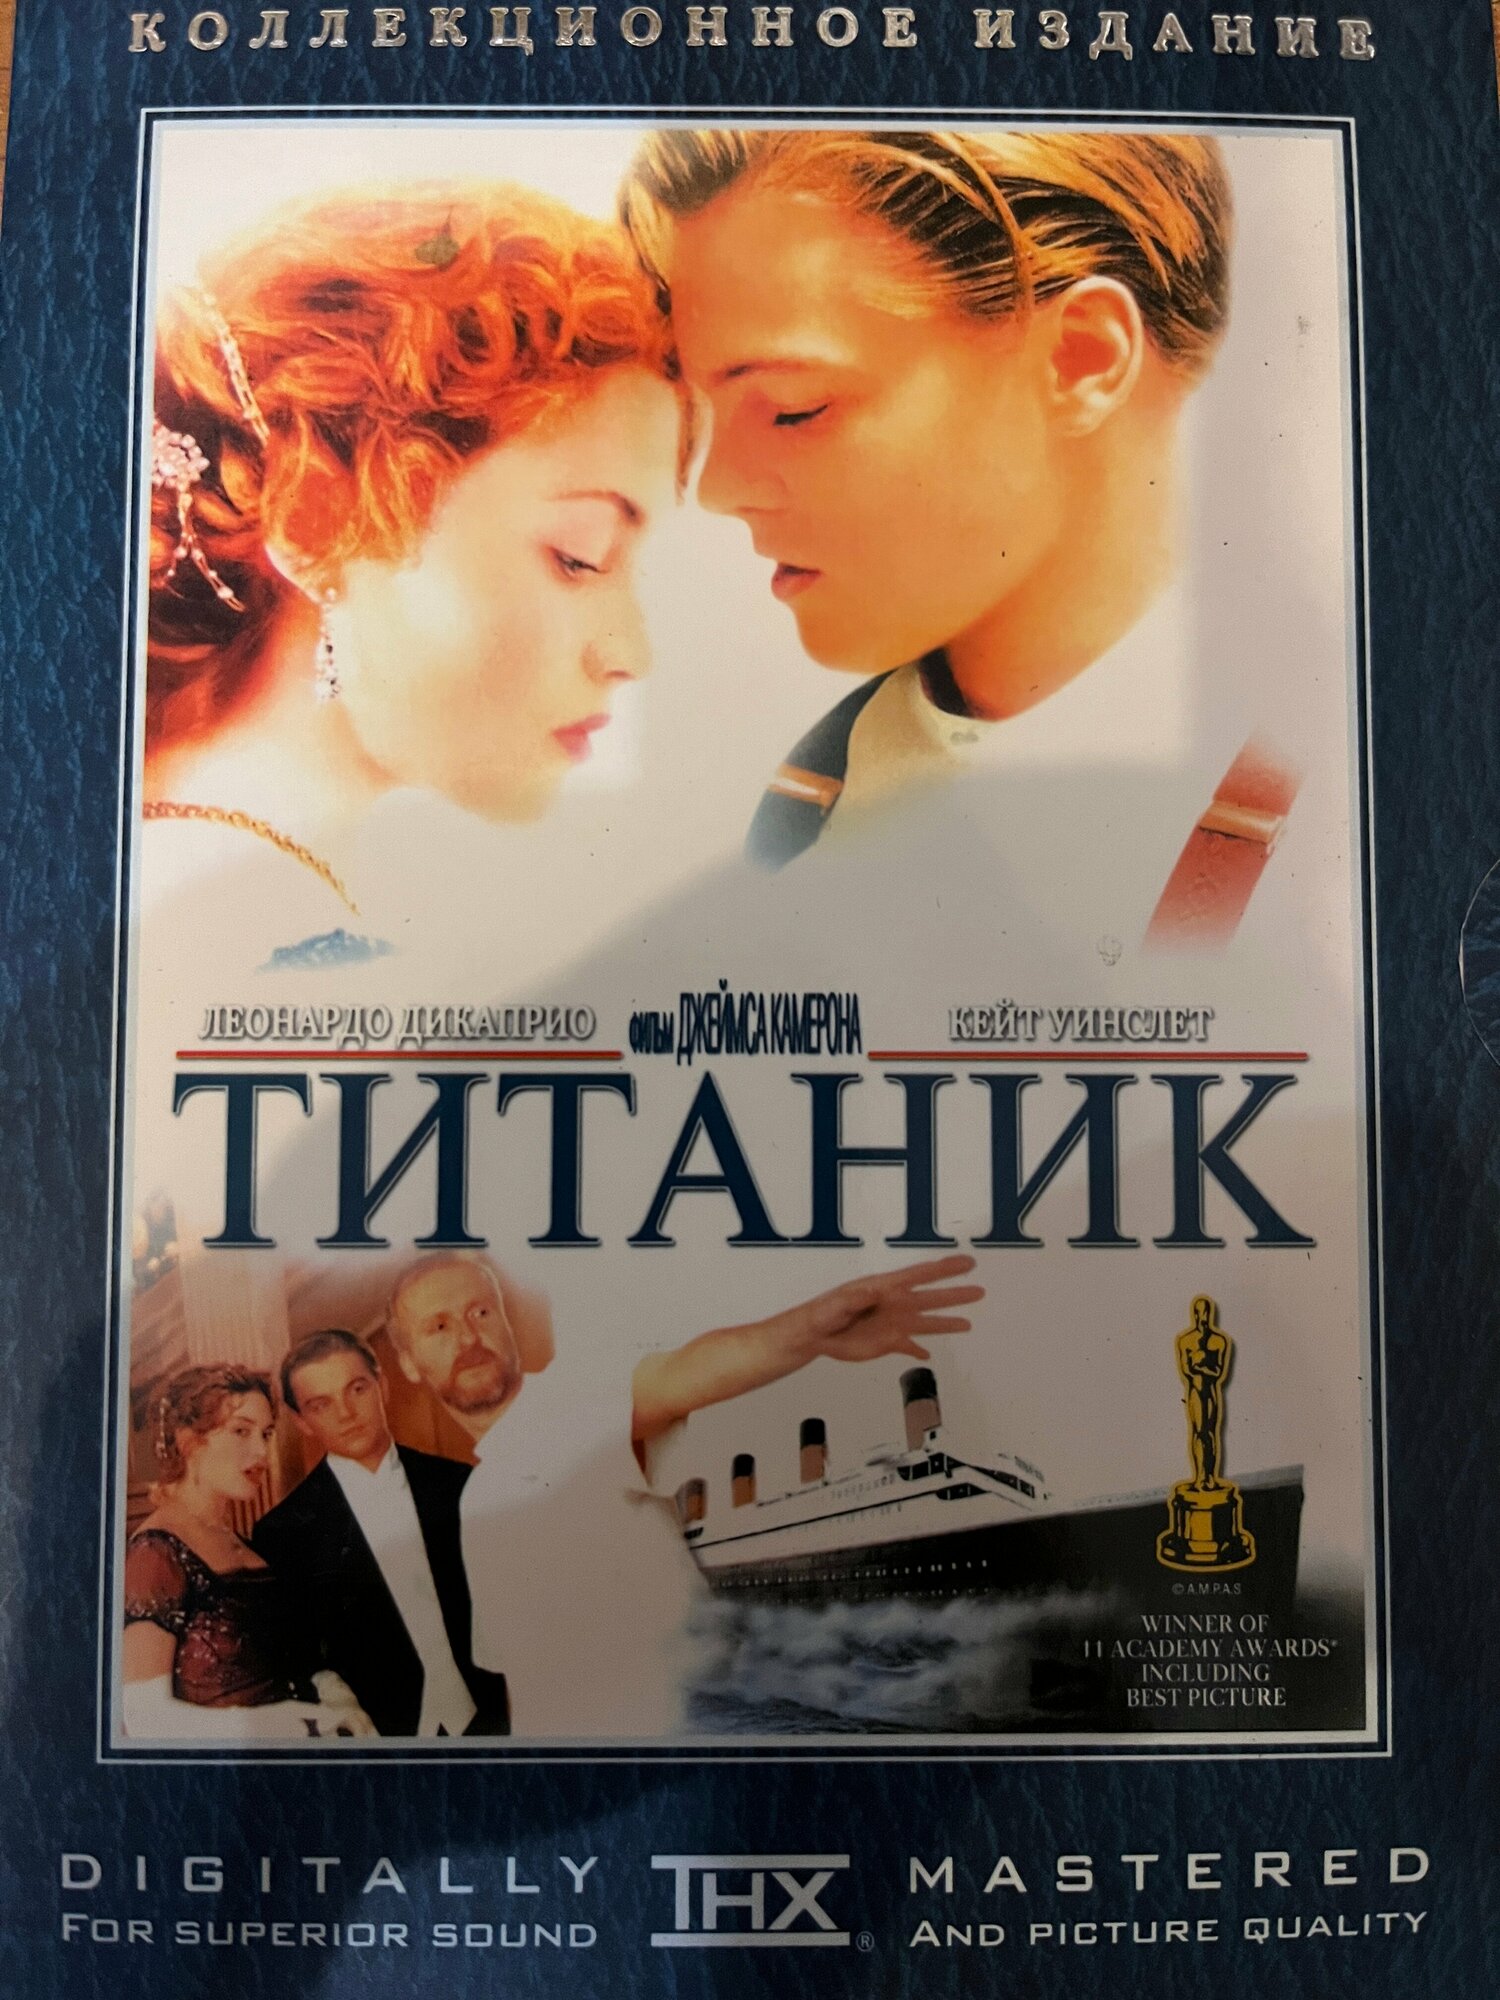 Фильм на DVD: Титаник. Коллекционное издание